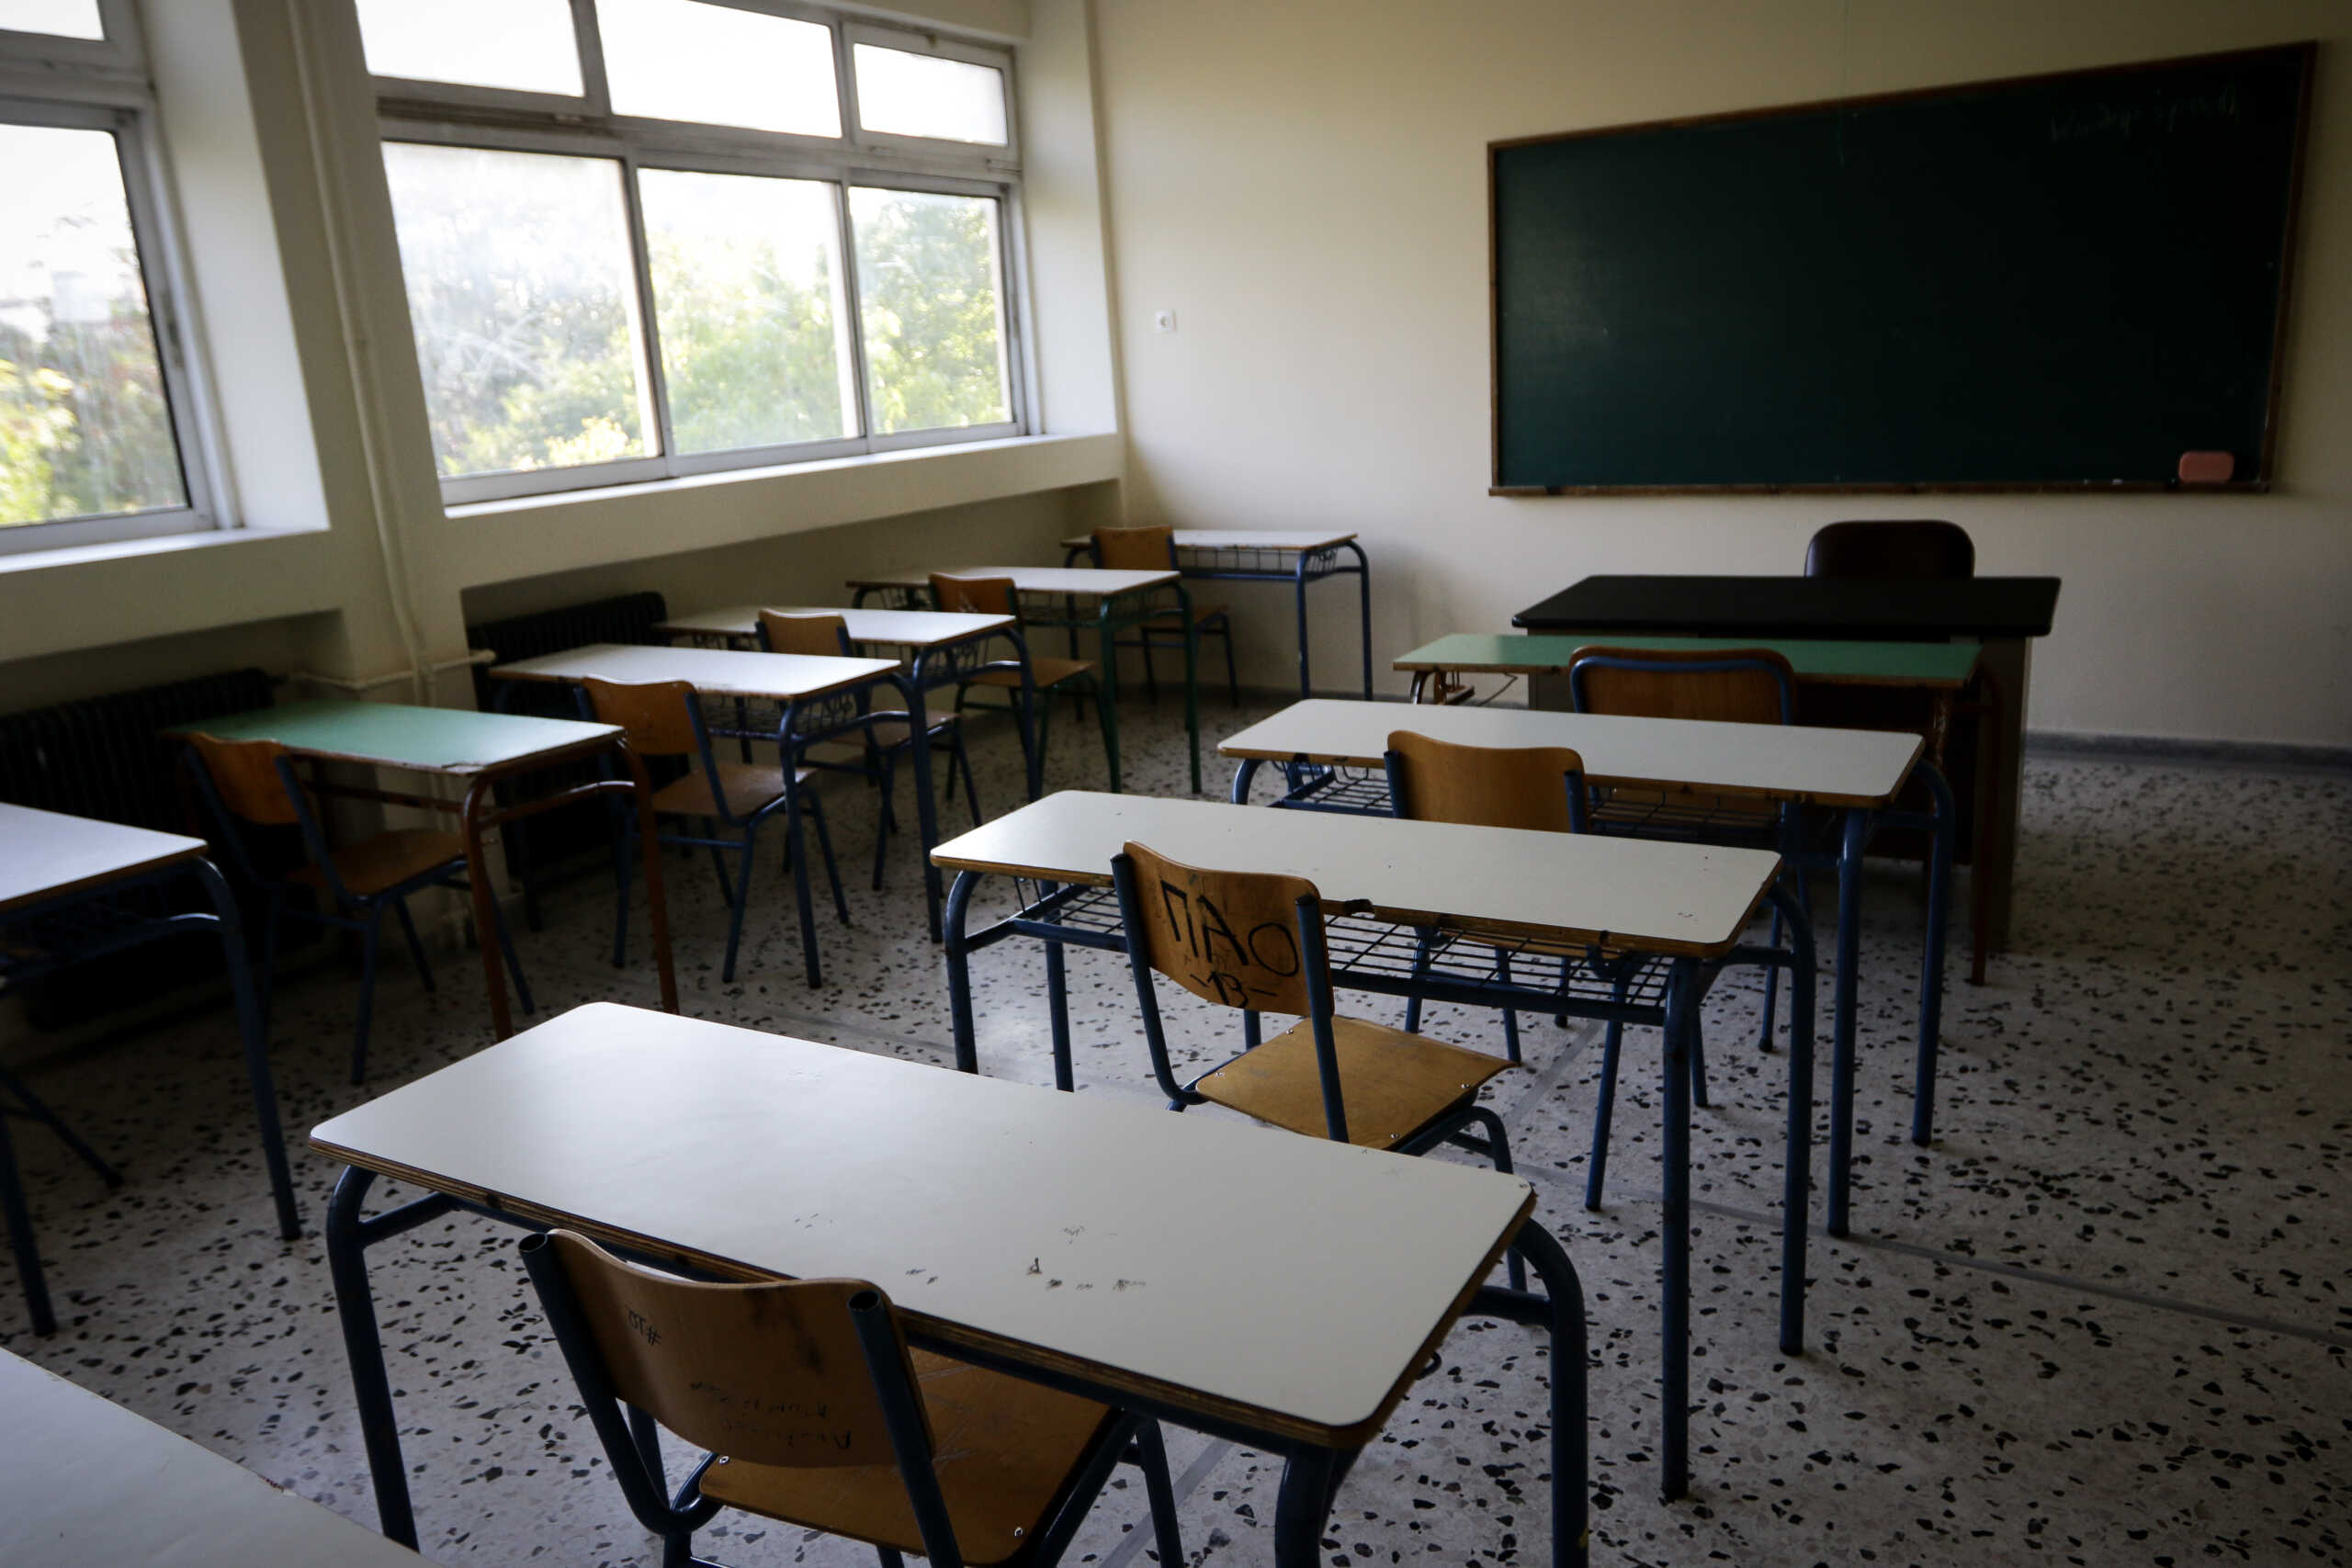 Καλύβια: Σοκ από την επίθεση πατέρα σε καθηγήτρια Γυμνασίου – Αυτόπτες μάρτυρες οι συμμαθητές του γιου του